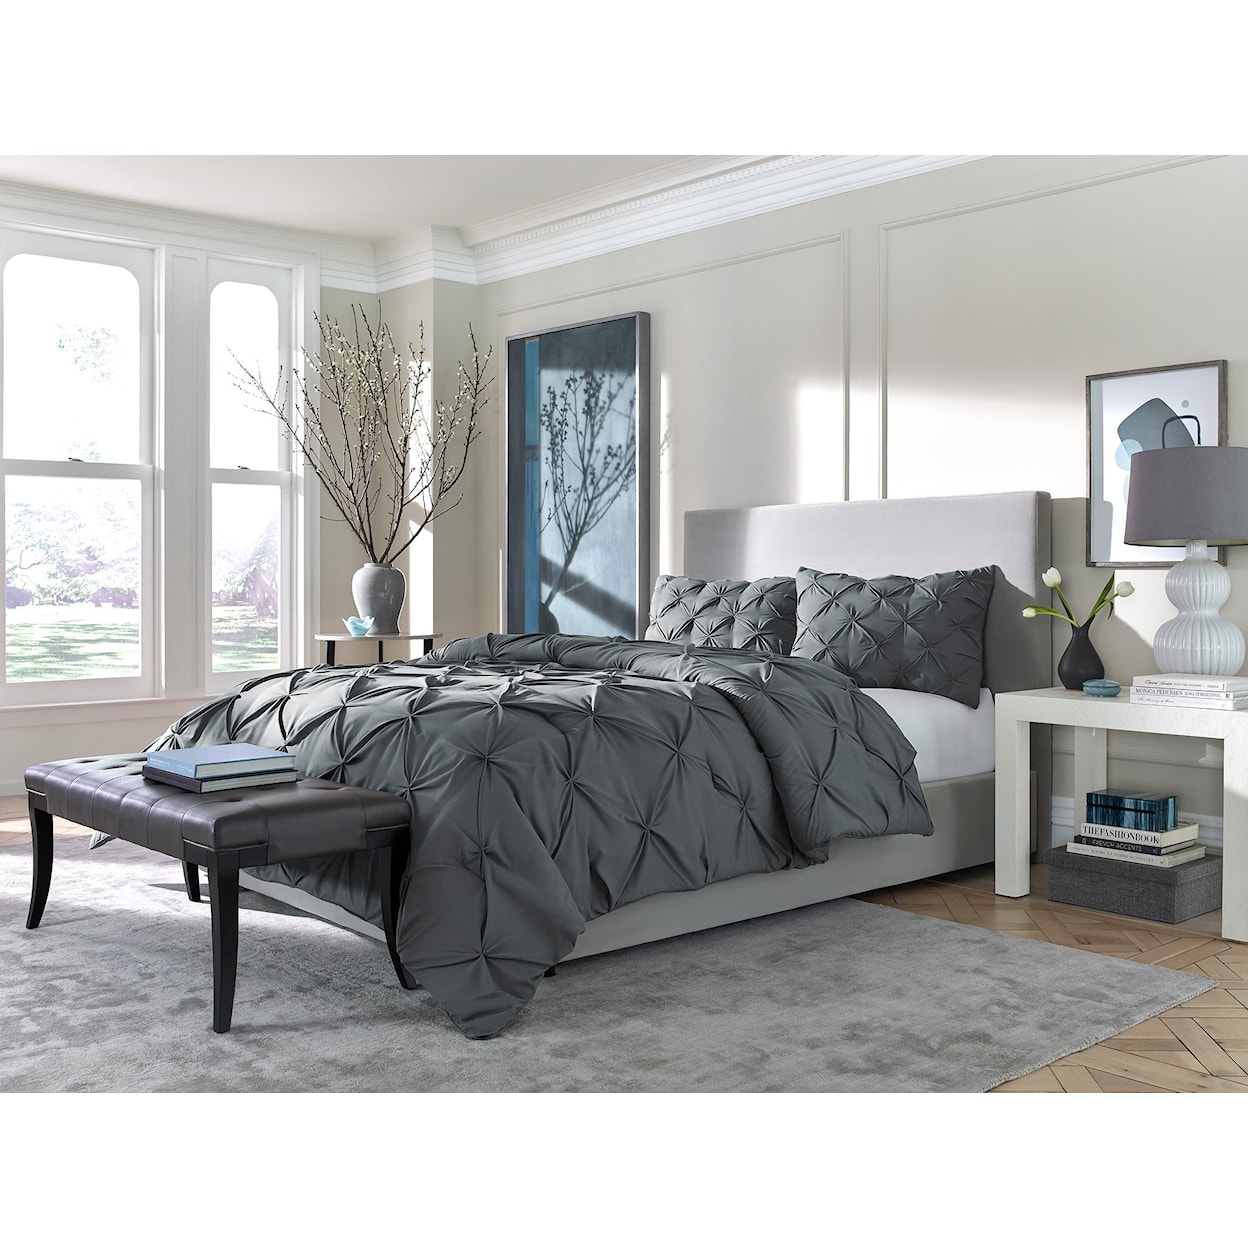 Sam's Furniture Sleep Essentials Pinch Down Alternative Queen Comforter Set